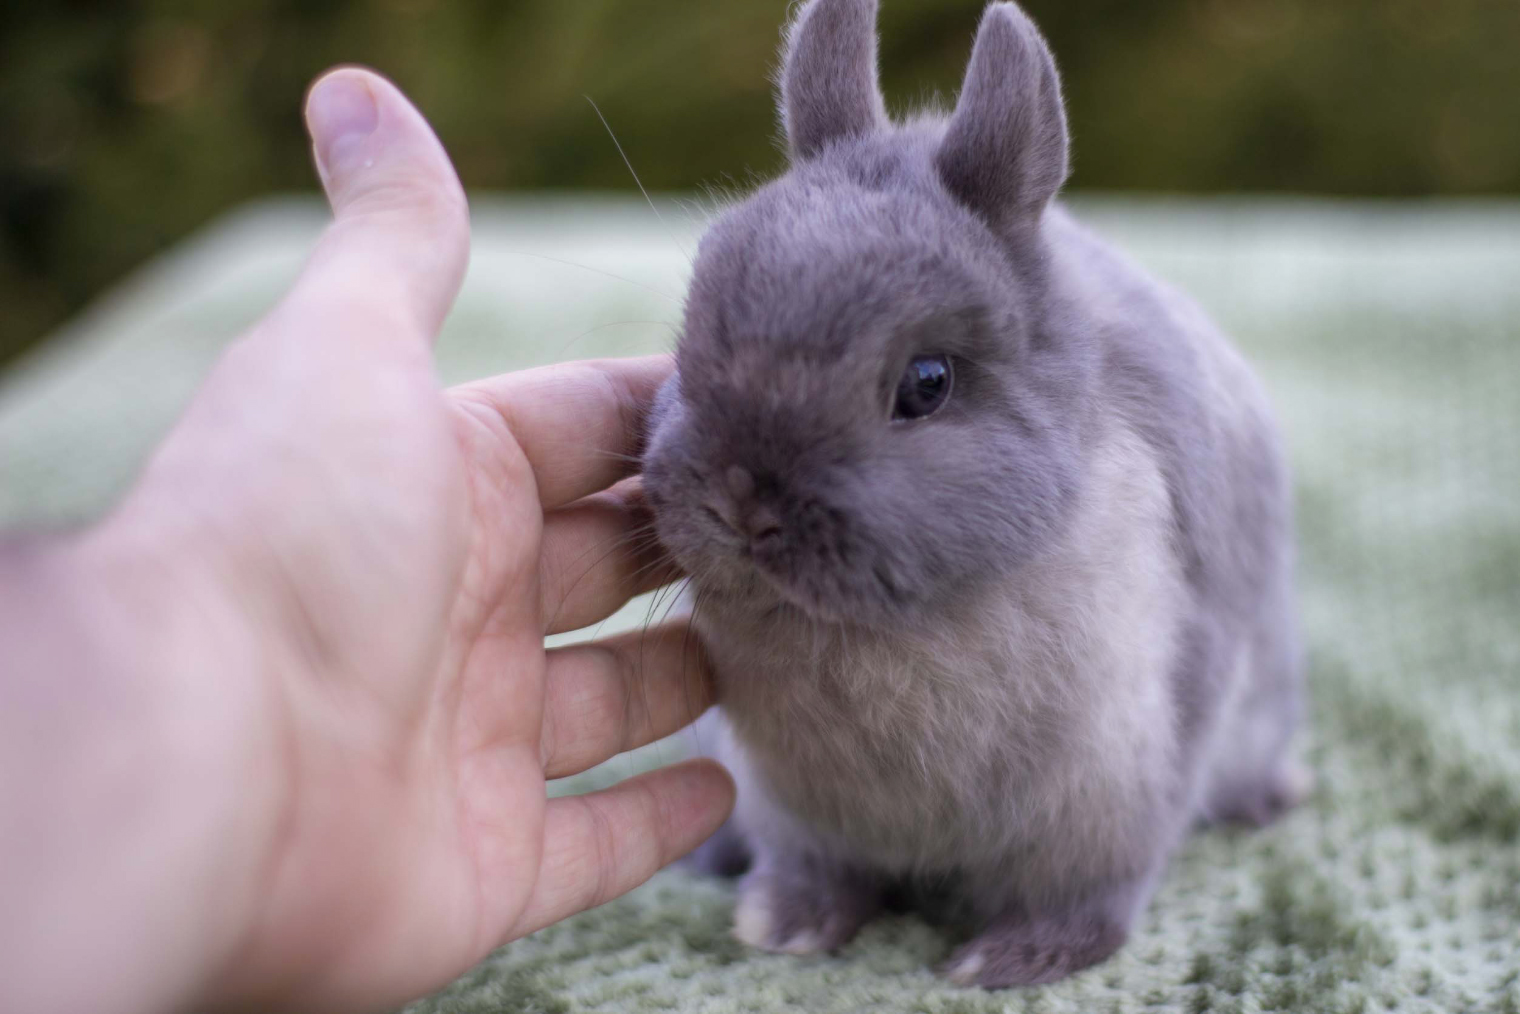 Кролики миноры. Размер взрослого животного легко оценить в сравнении с ладонью. Фото: Николай Любченко